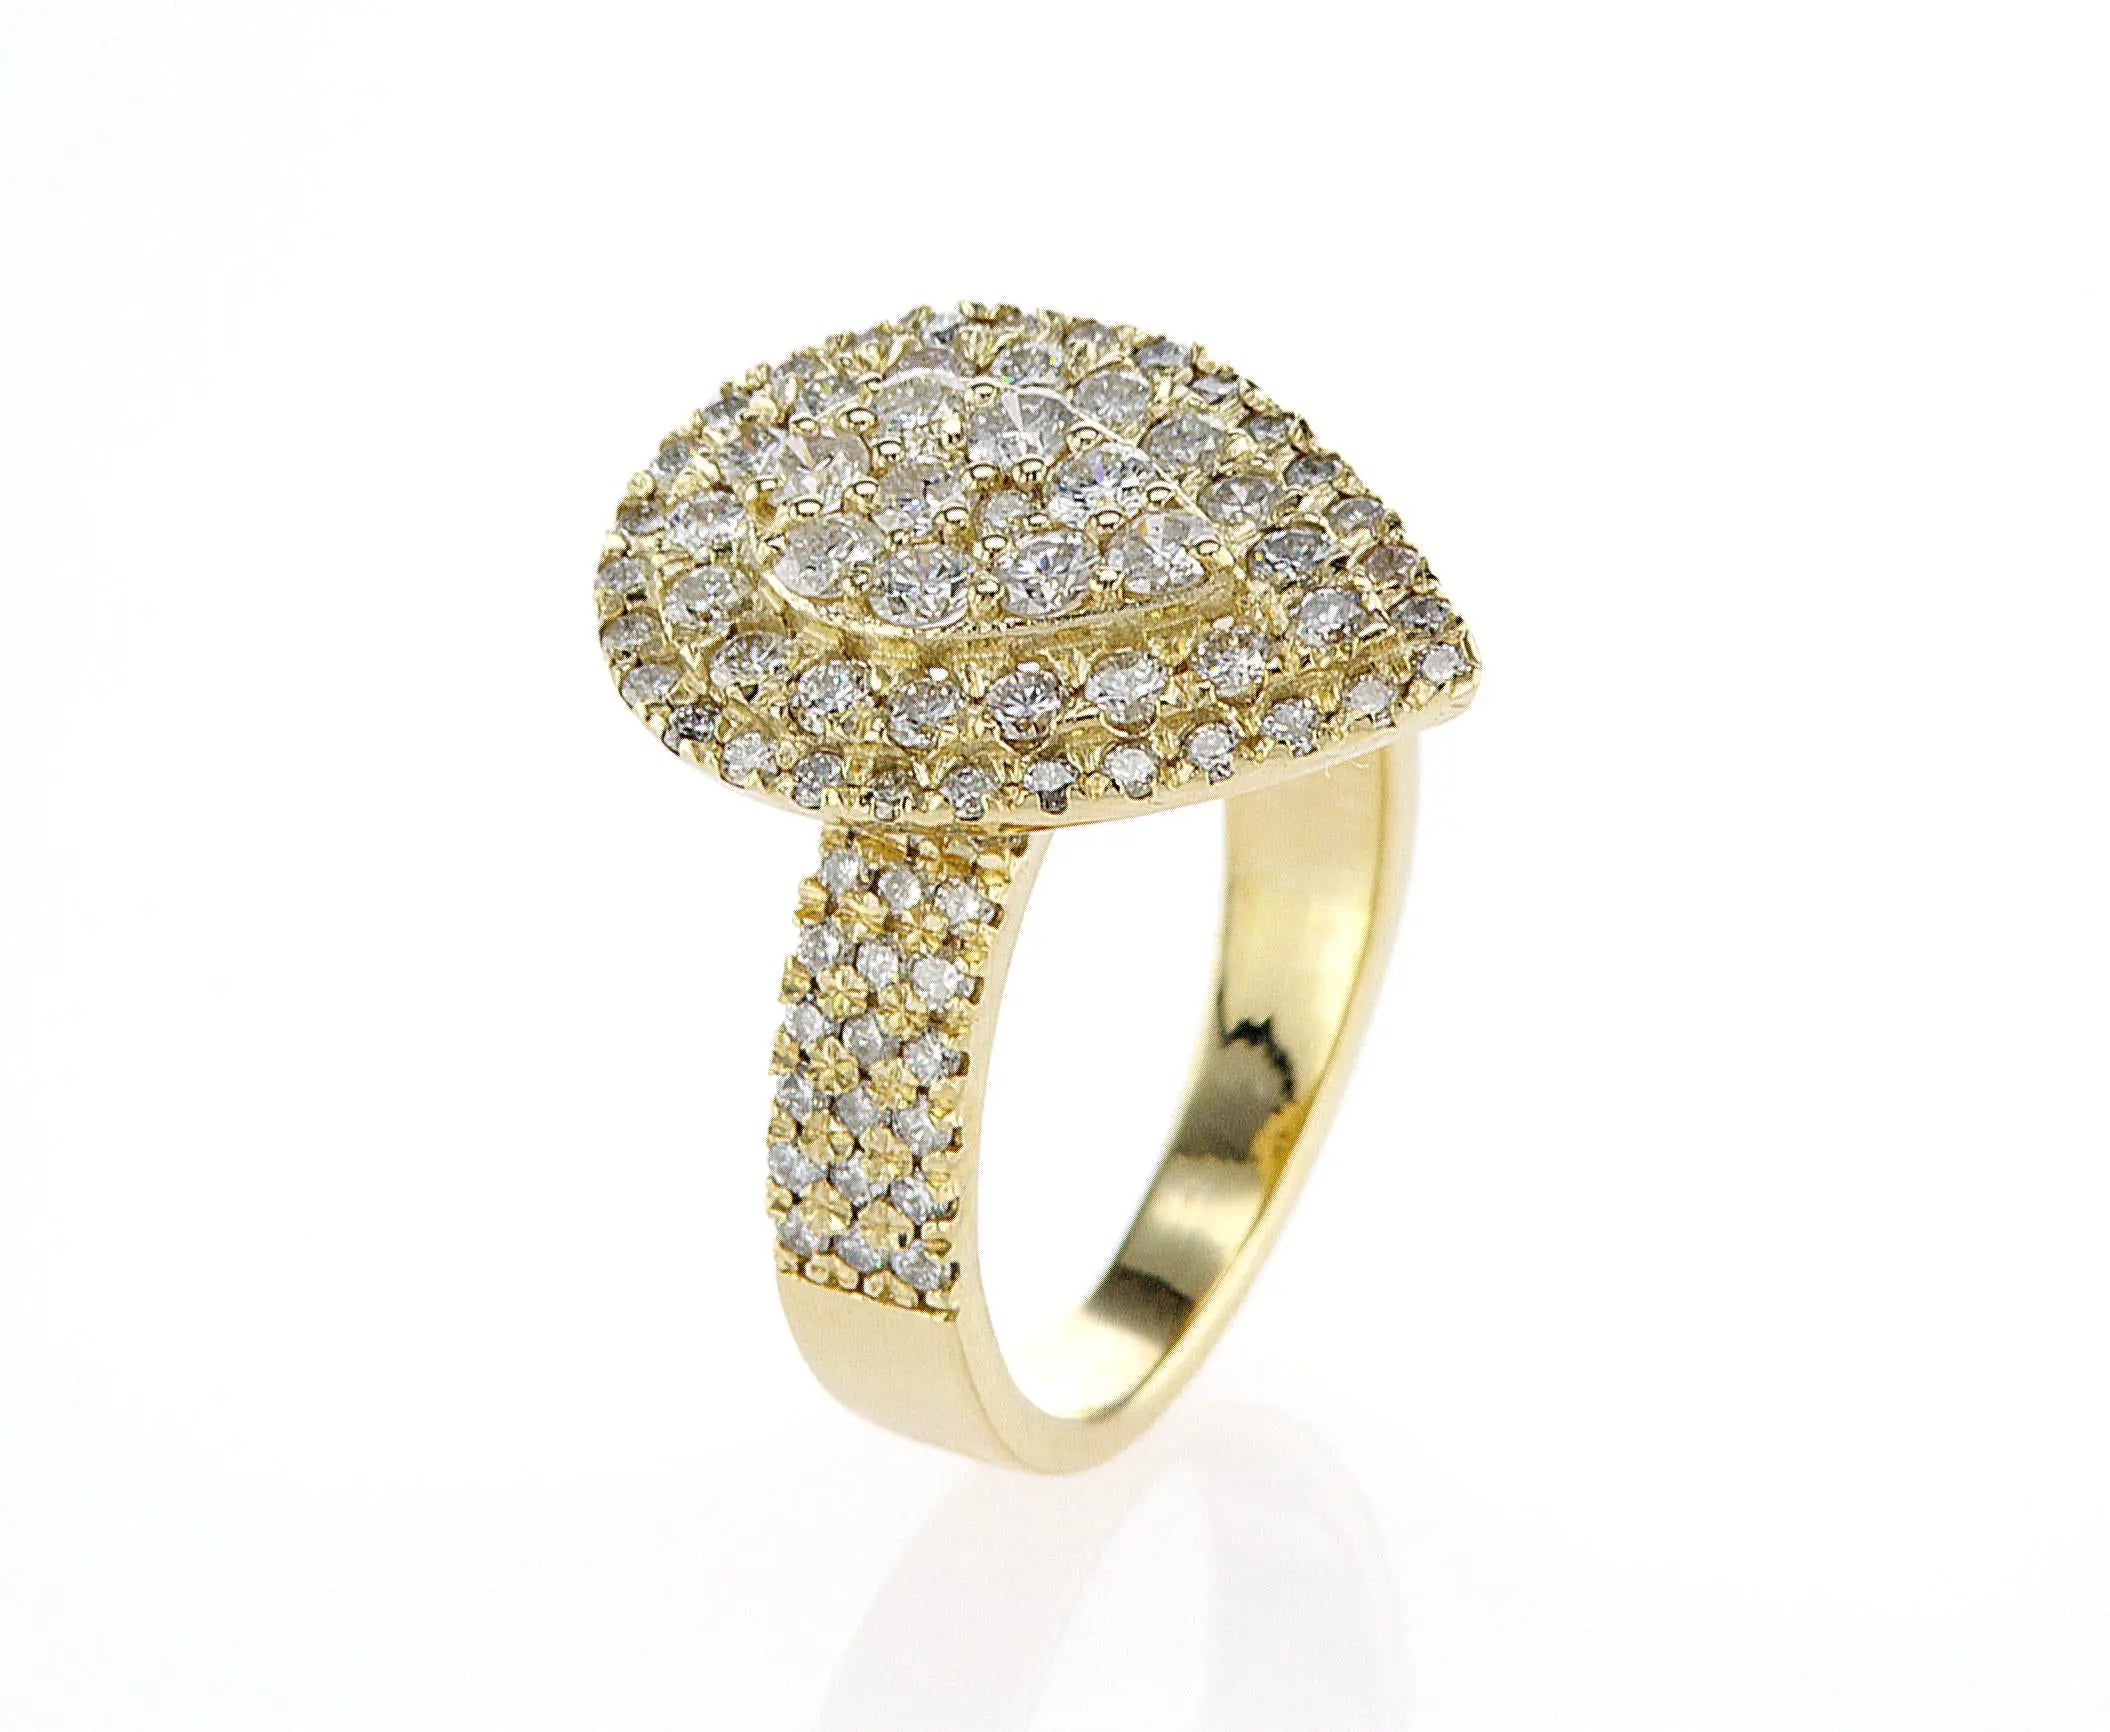 טבעת מעוצבת קיילה Fermond Jewelery